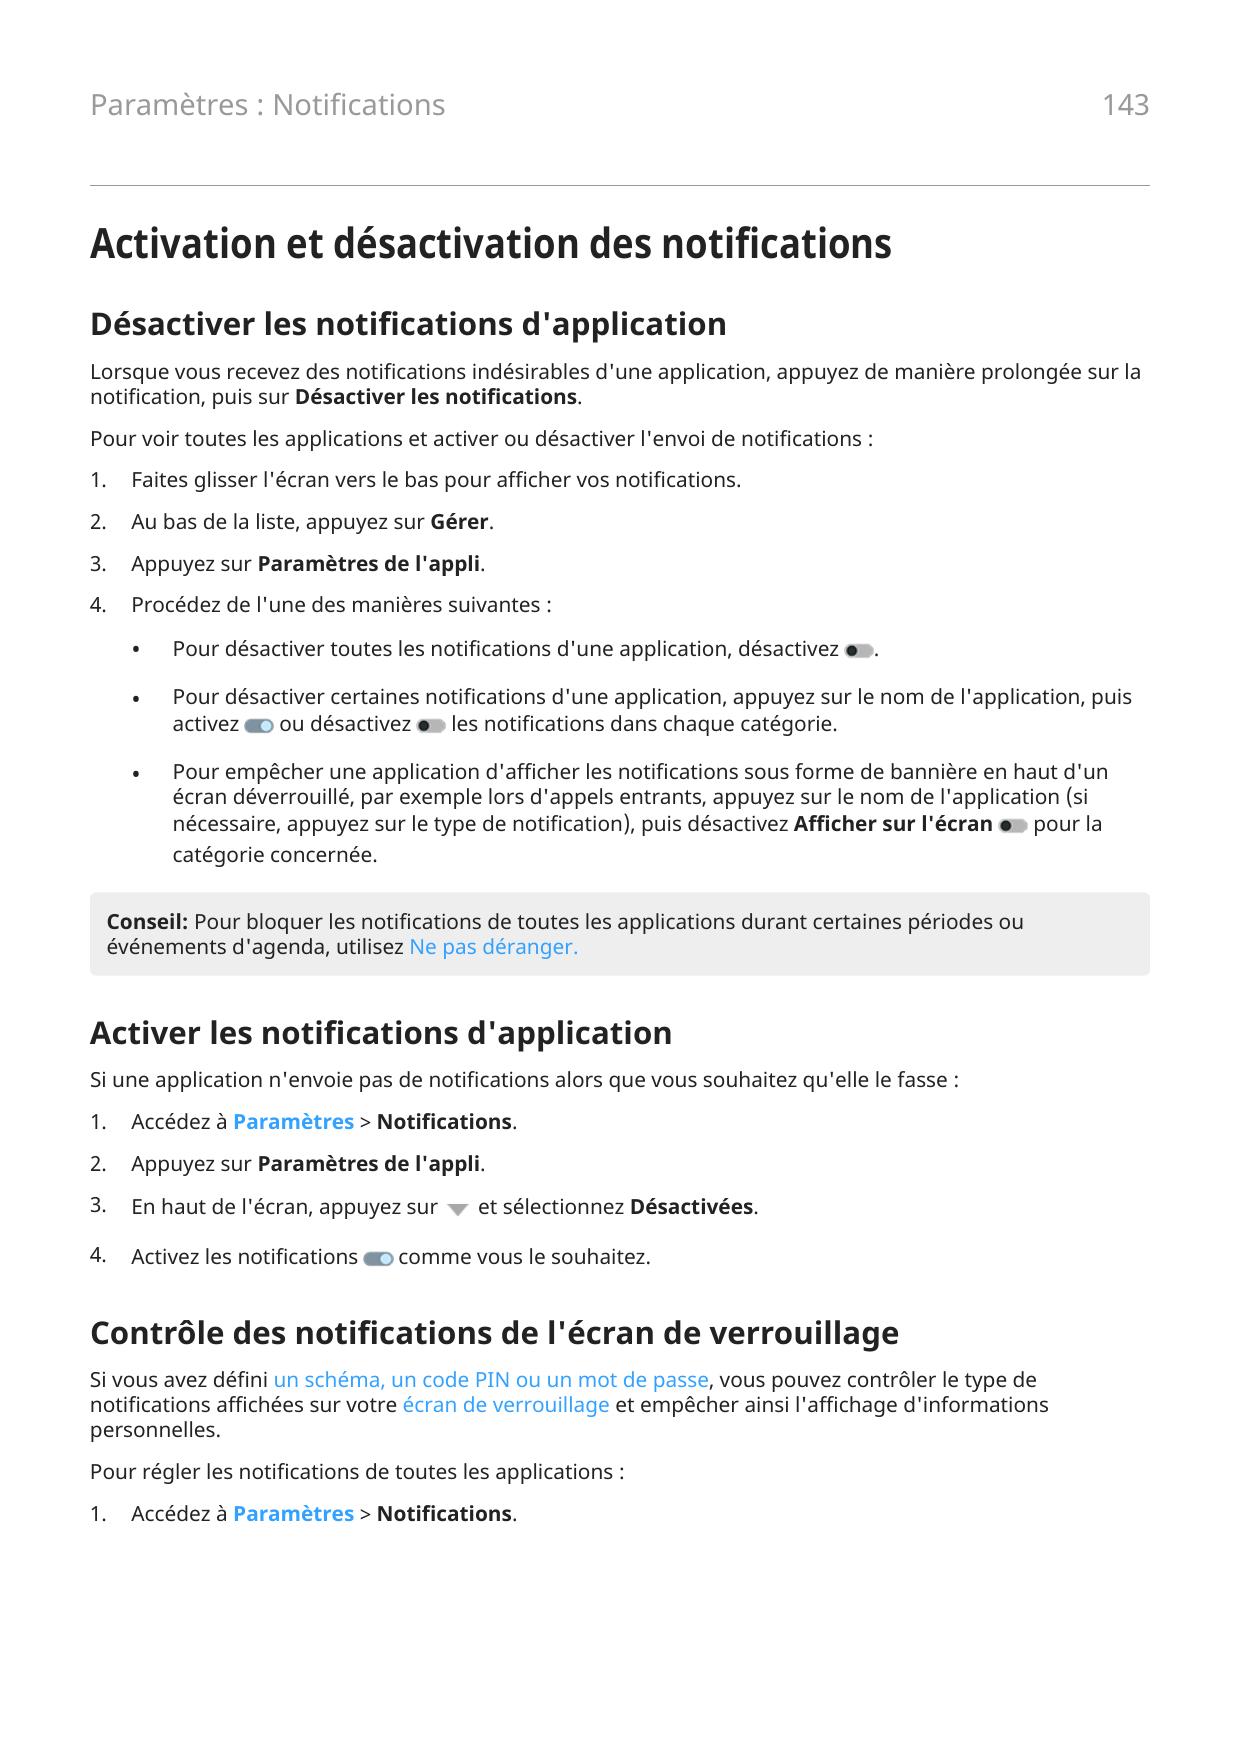 143Paramètres : NotificationsActivation et désactivation des notificationsDésactiver les notifications d'applicationLorsque vous